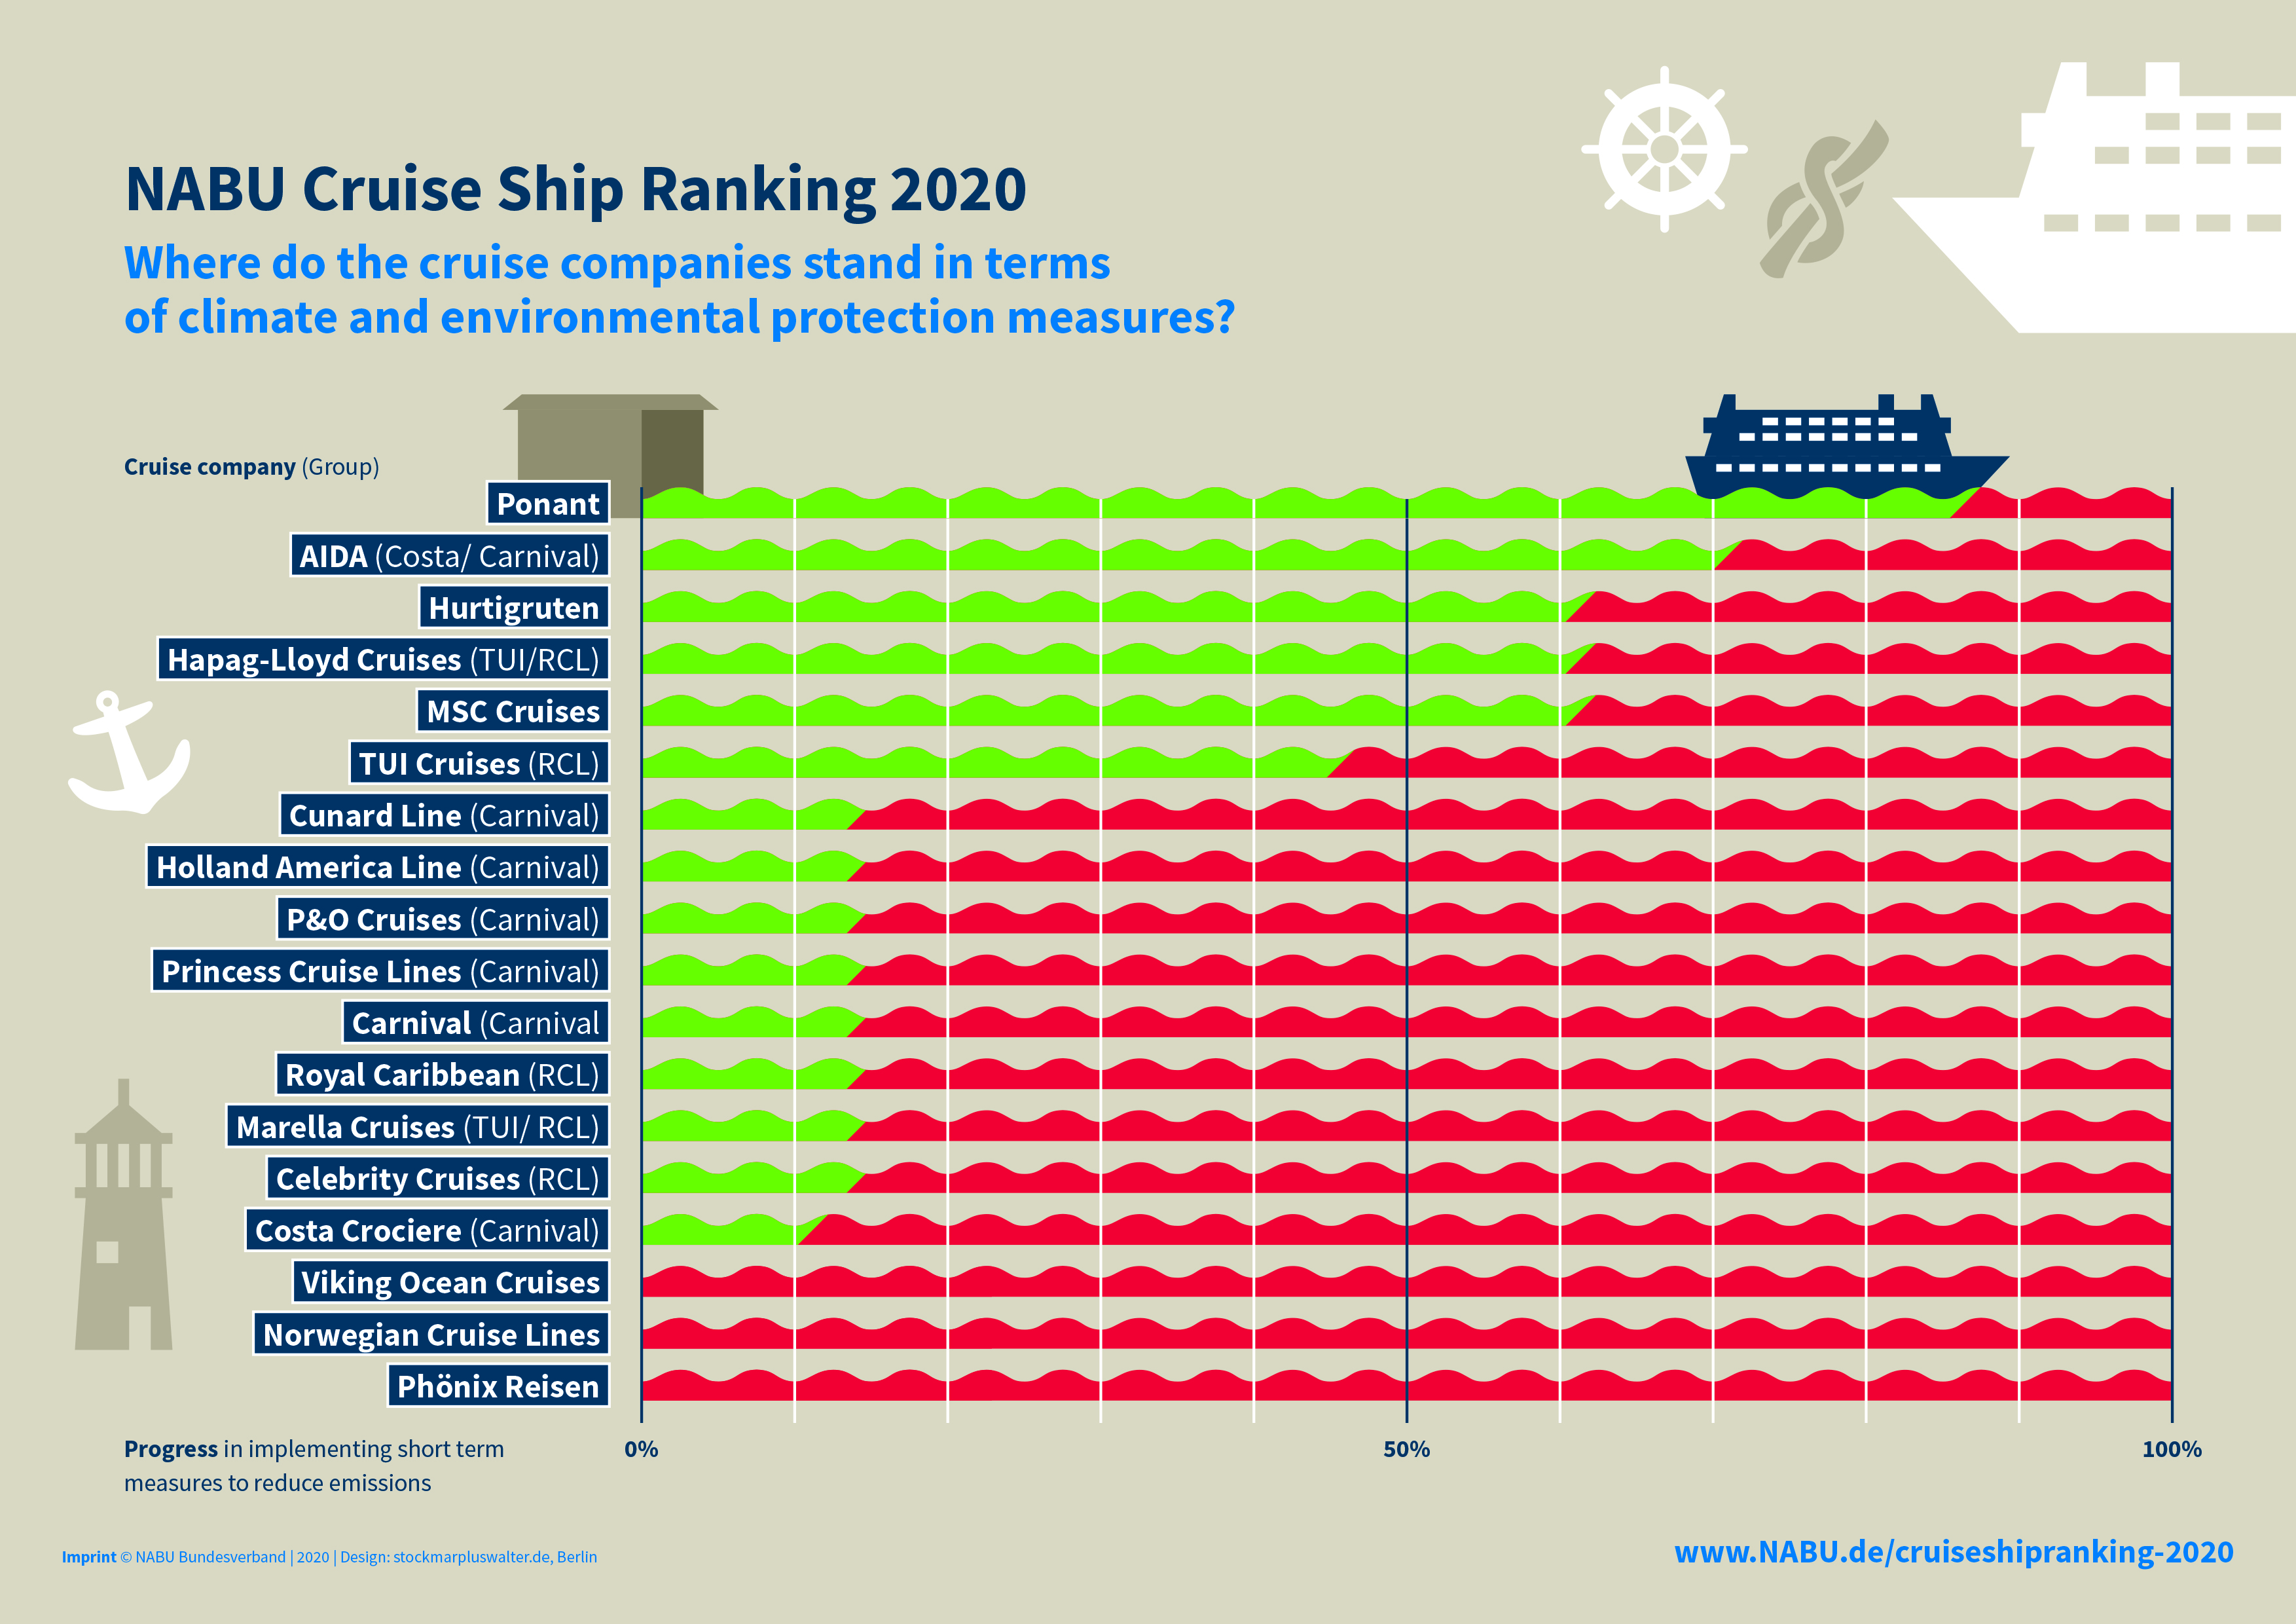 zacks ranking on norwegian cruise line